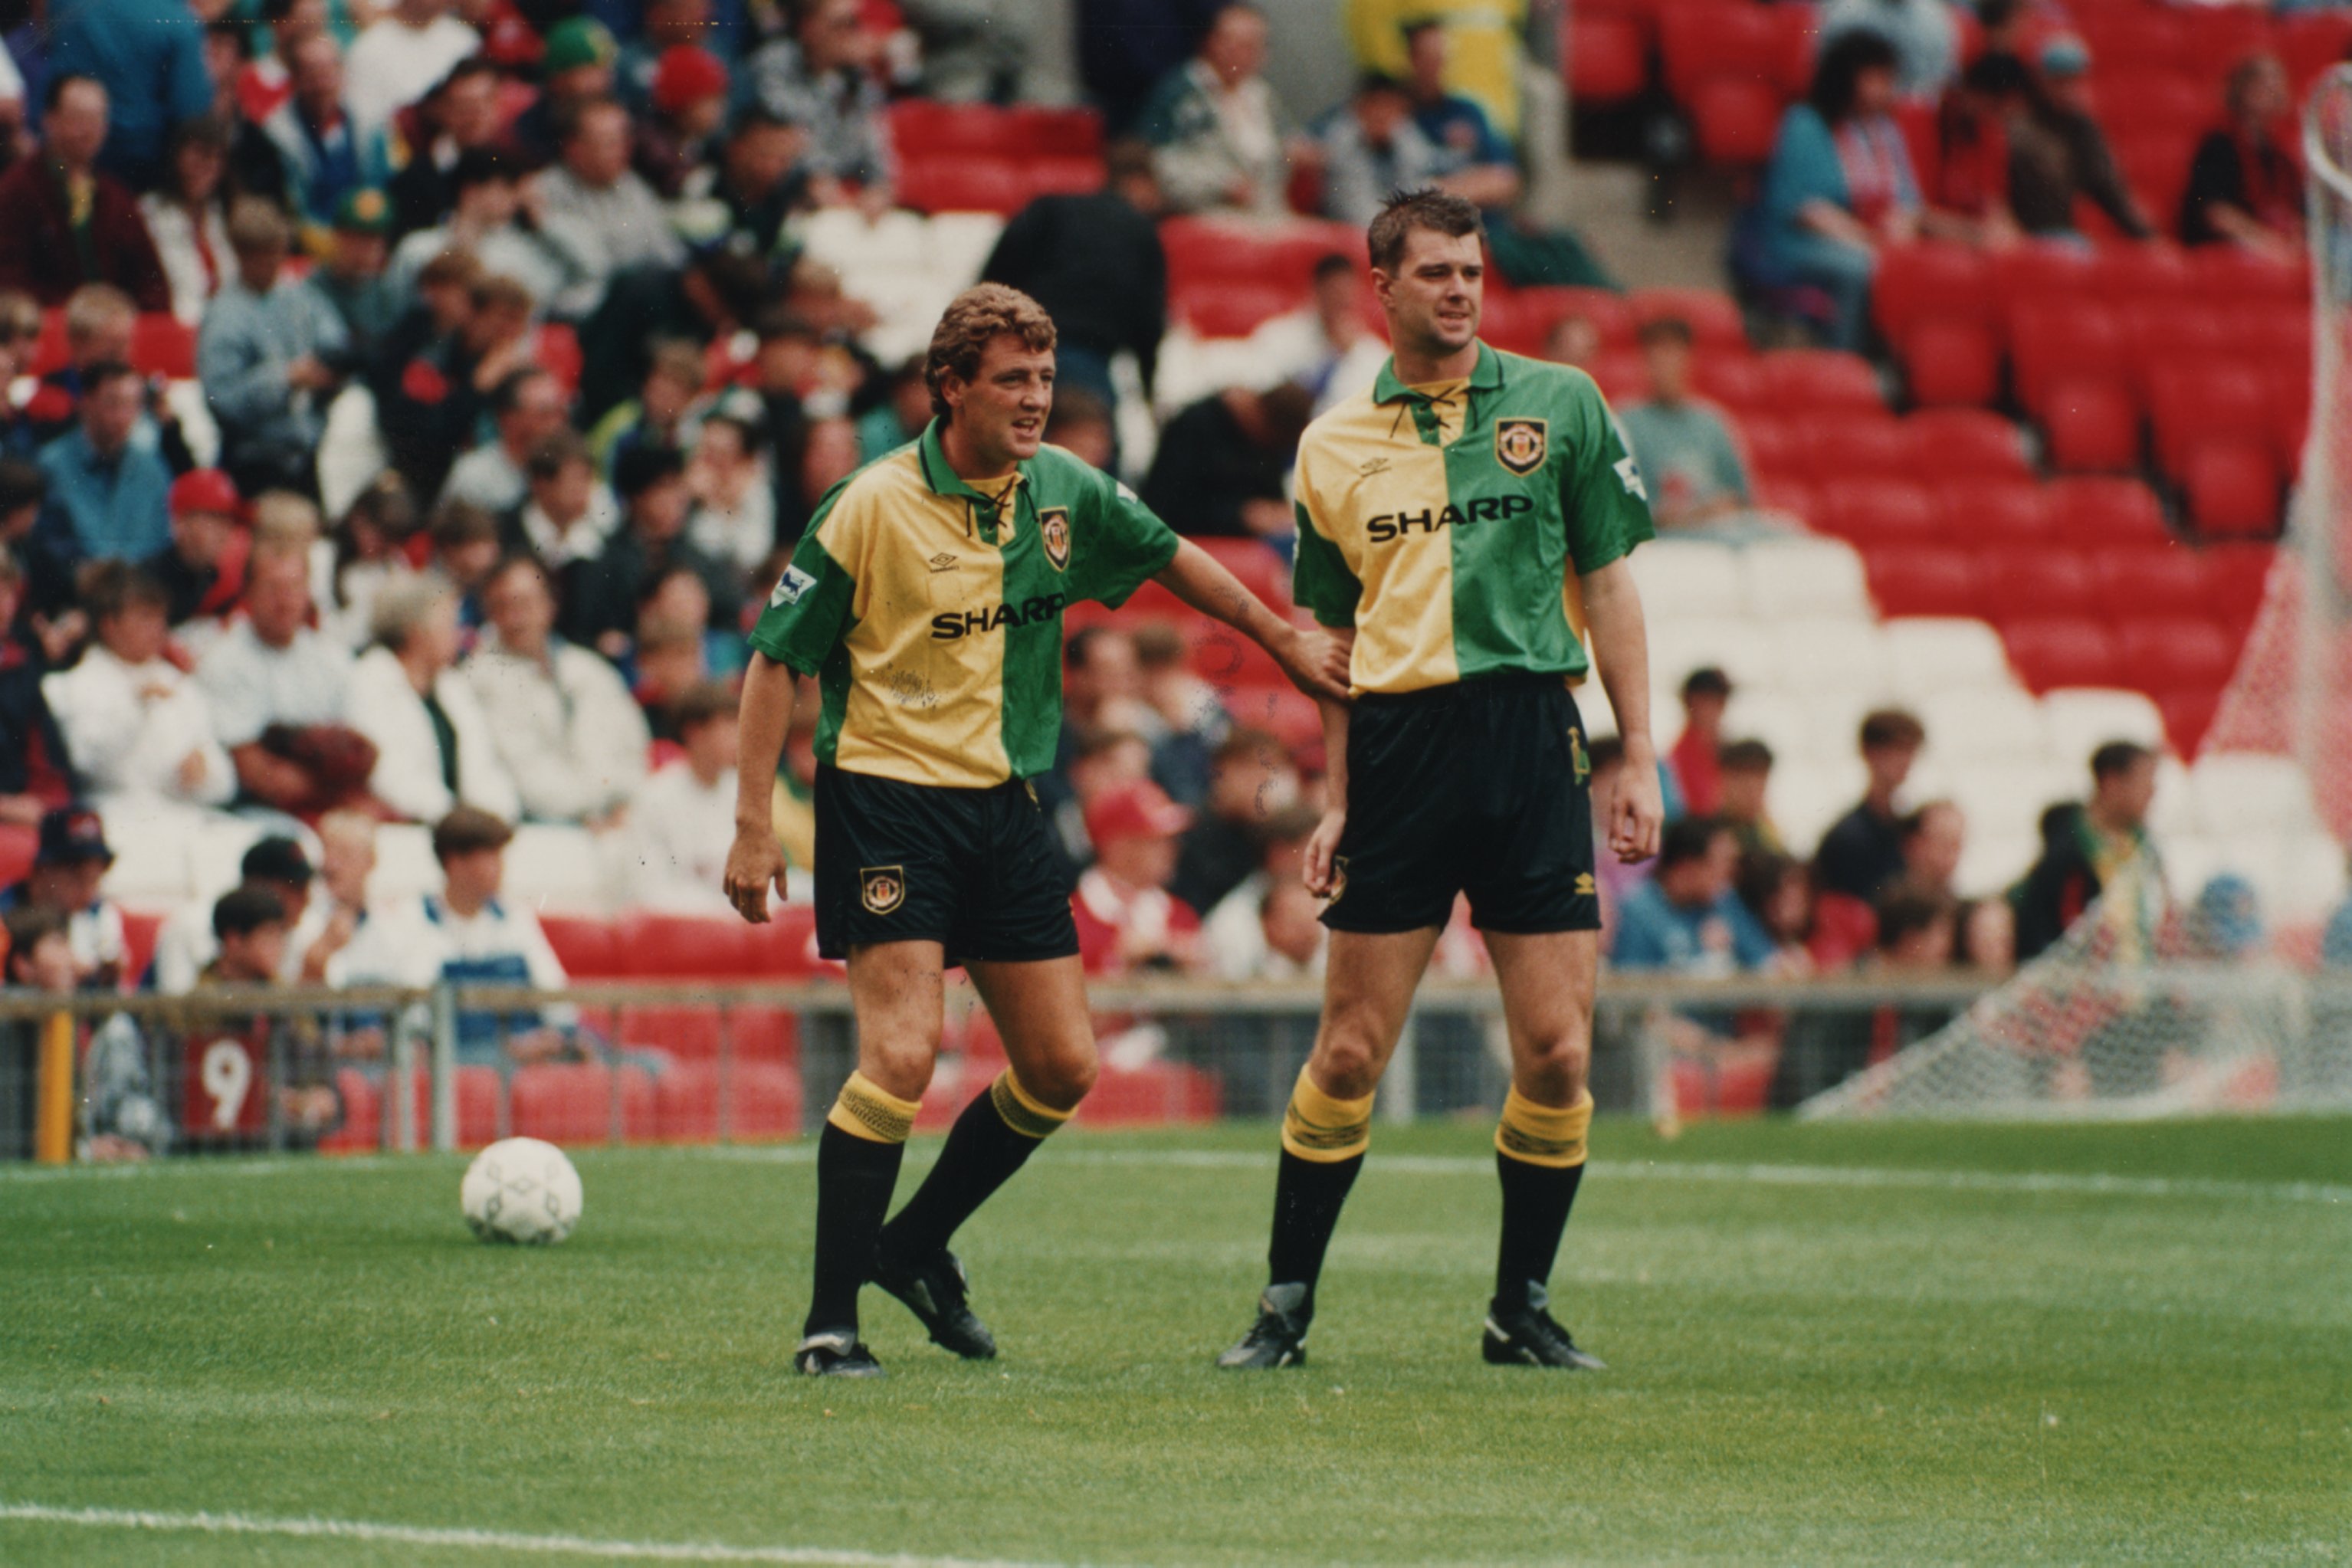 Bruce und Pallister waren in den 1990er Jahren legendäre Verteidigungspartner bei Man Utd